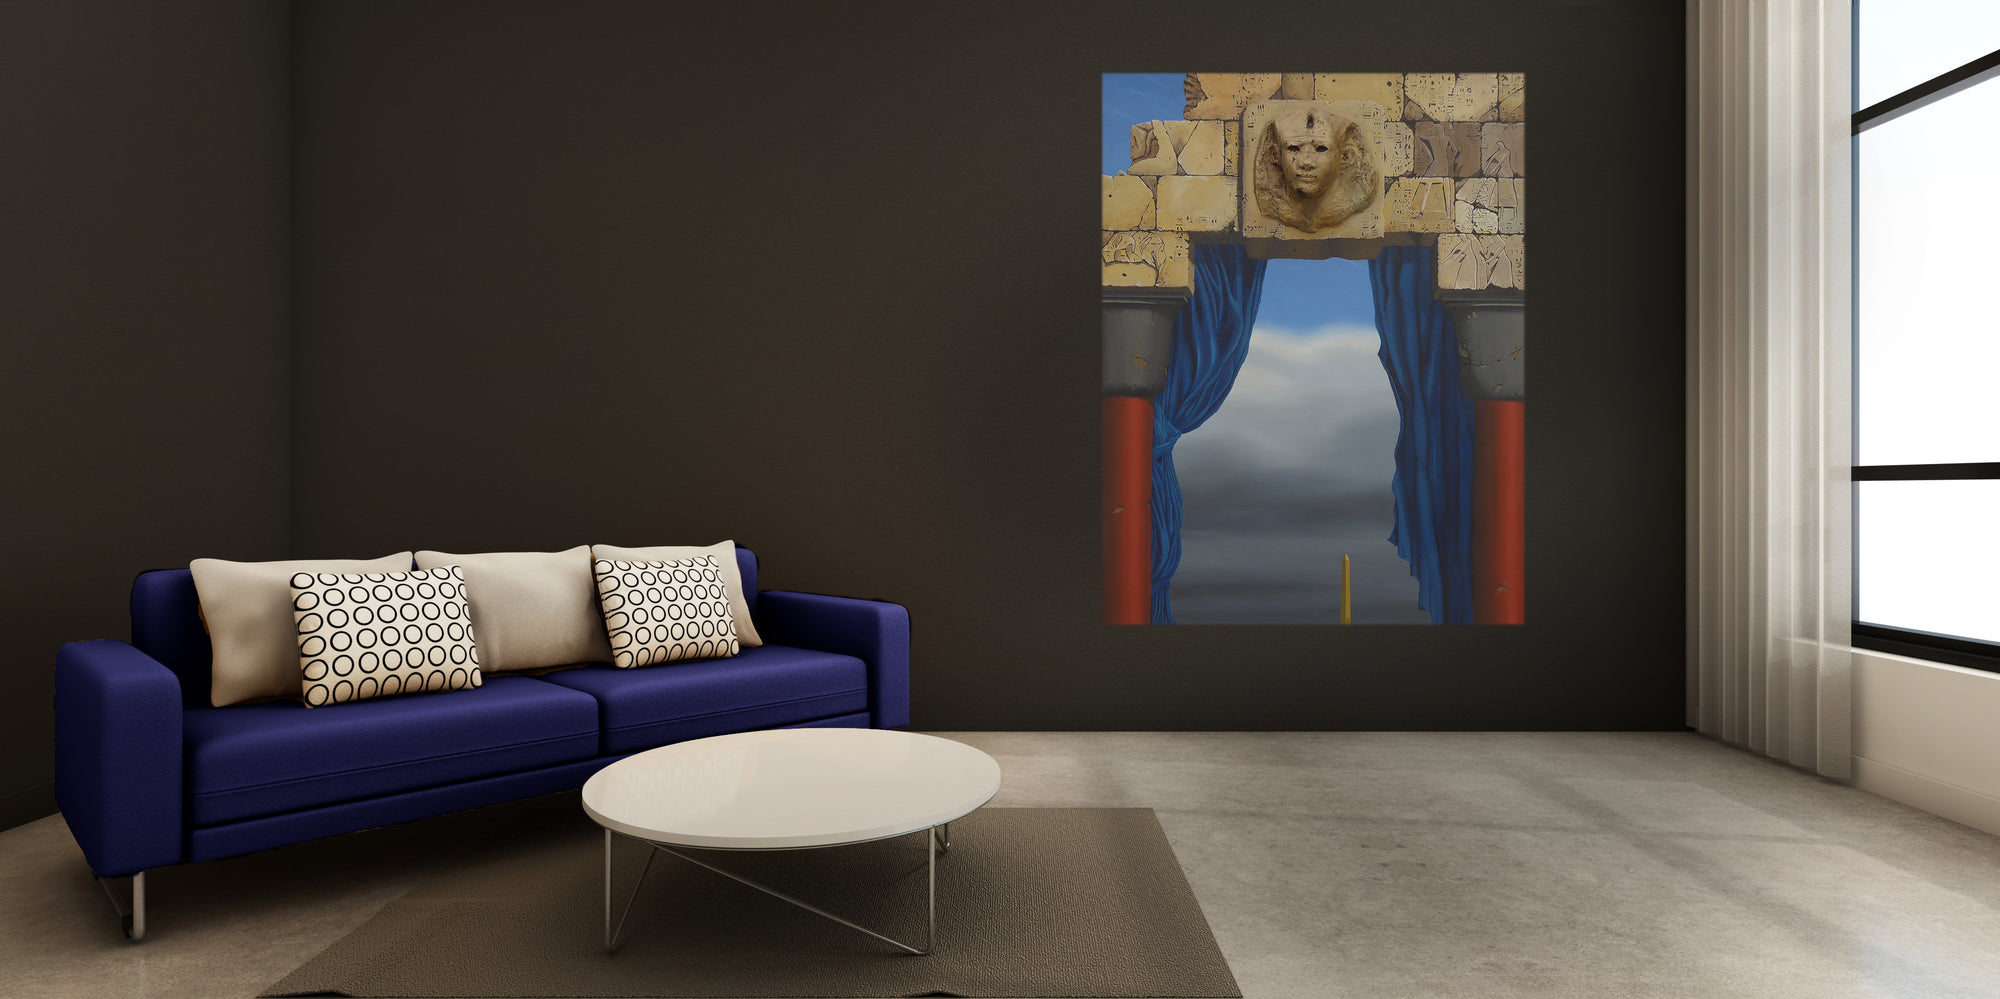 Queen Hatshepsut by Paul Smith